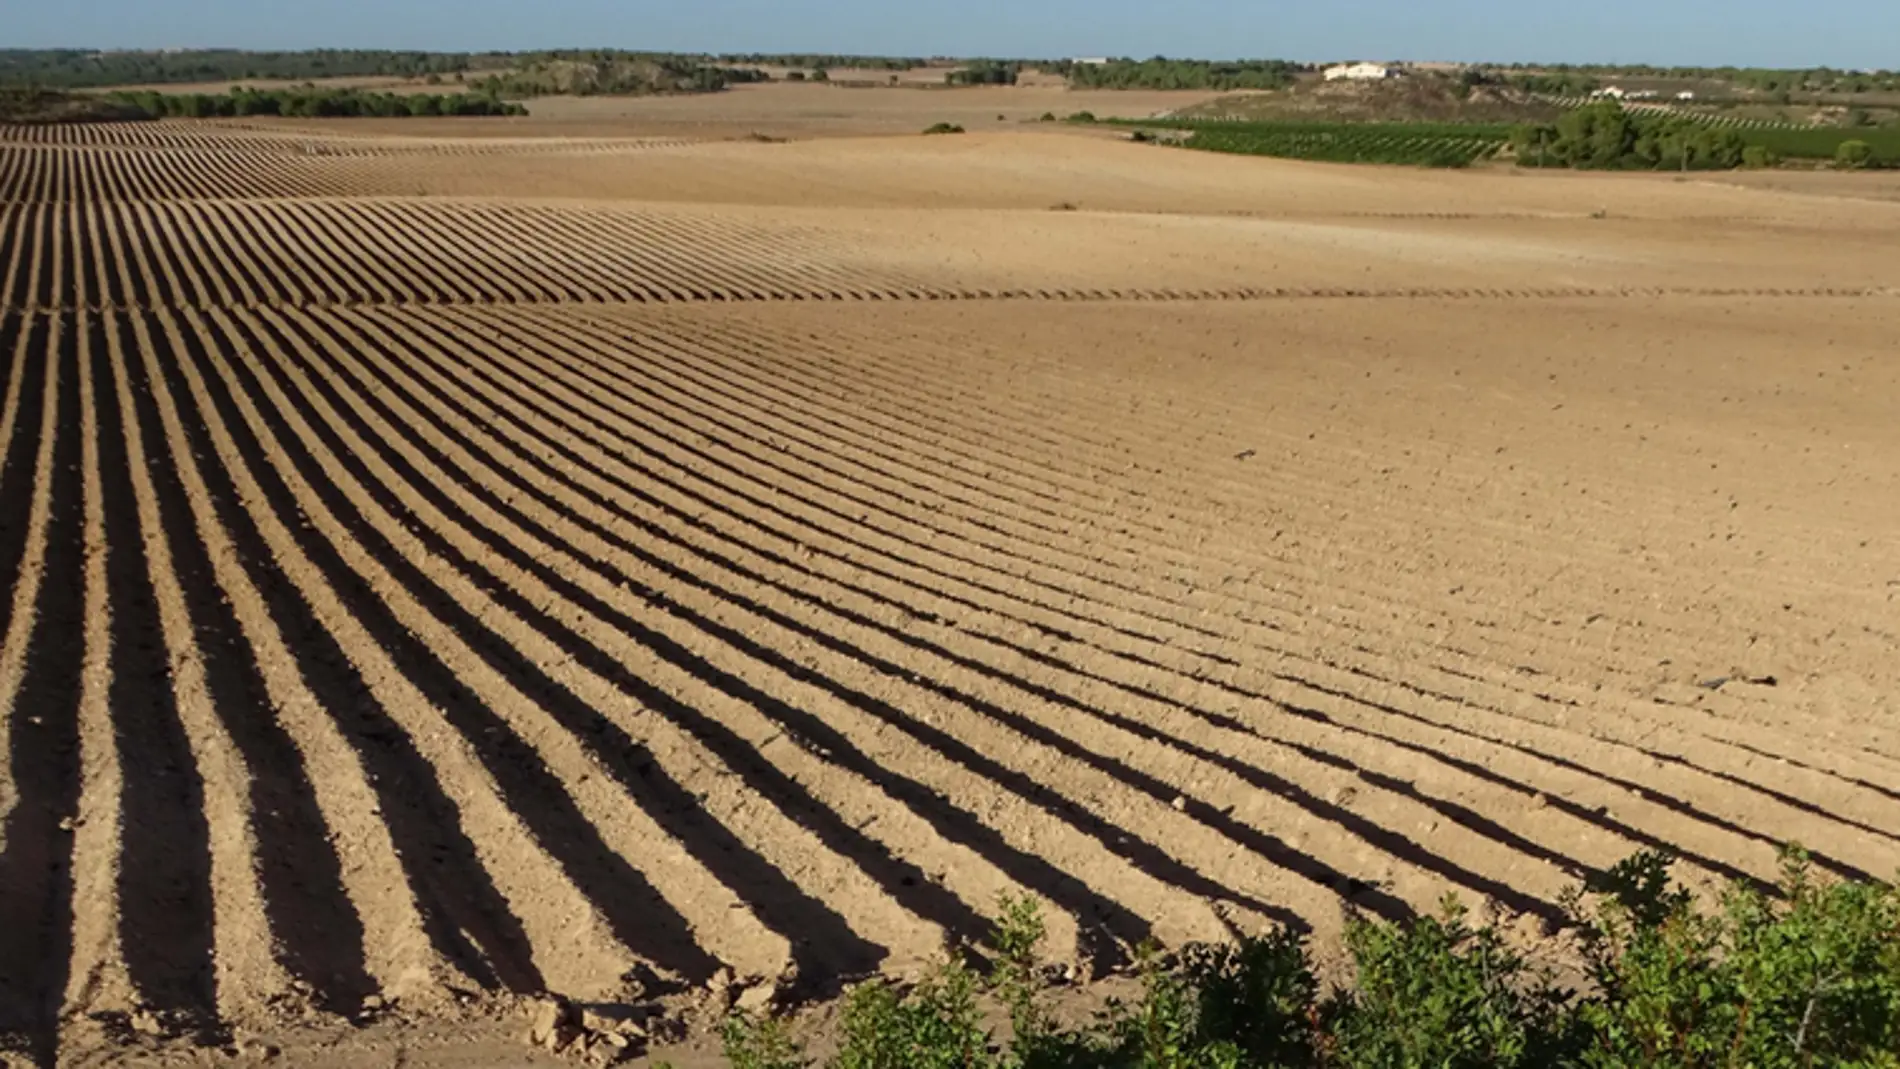  ANSE pide correspondencia inequívoca entre Unidades de Demanda Agraria y Derechos de Agua Inscritos que se imposibilite la futura regularización de nuevos regadíos en la cuenca